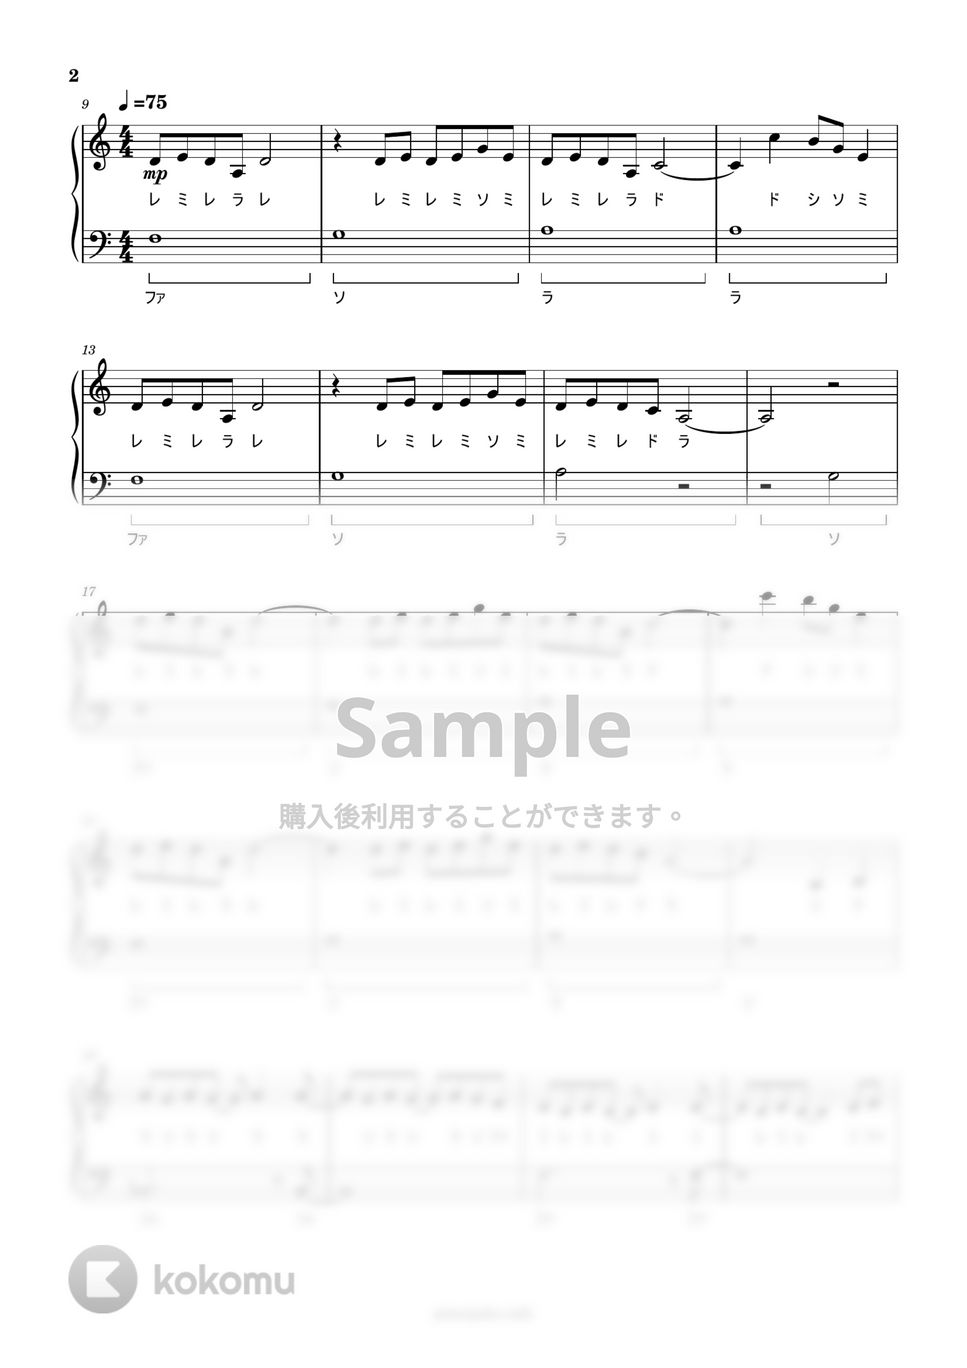 坂本龍一 - 戦場のメリークリスマス (ドレミ付き簡単楽譜) by ピアノ塾